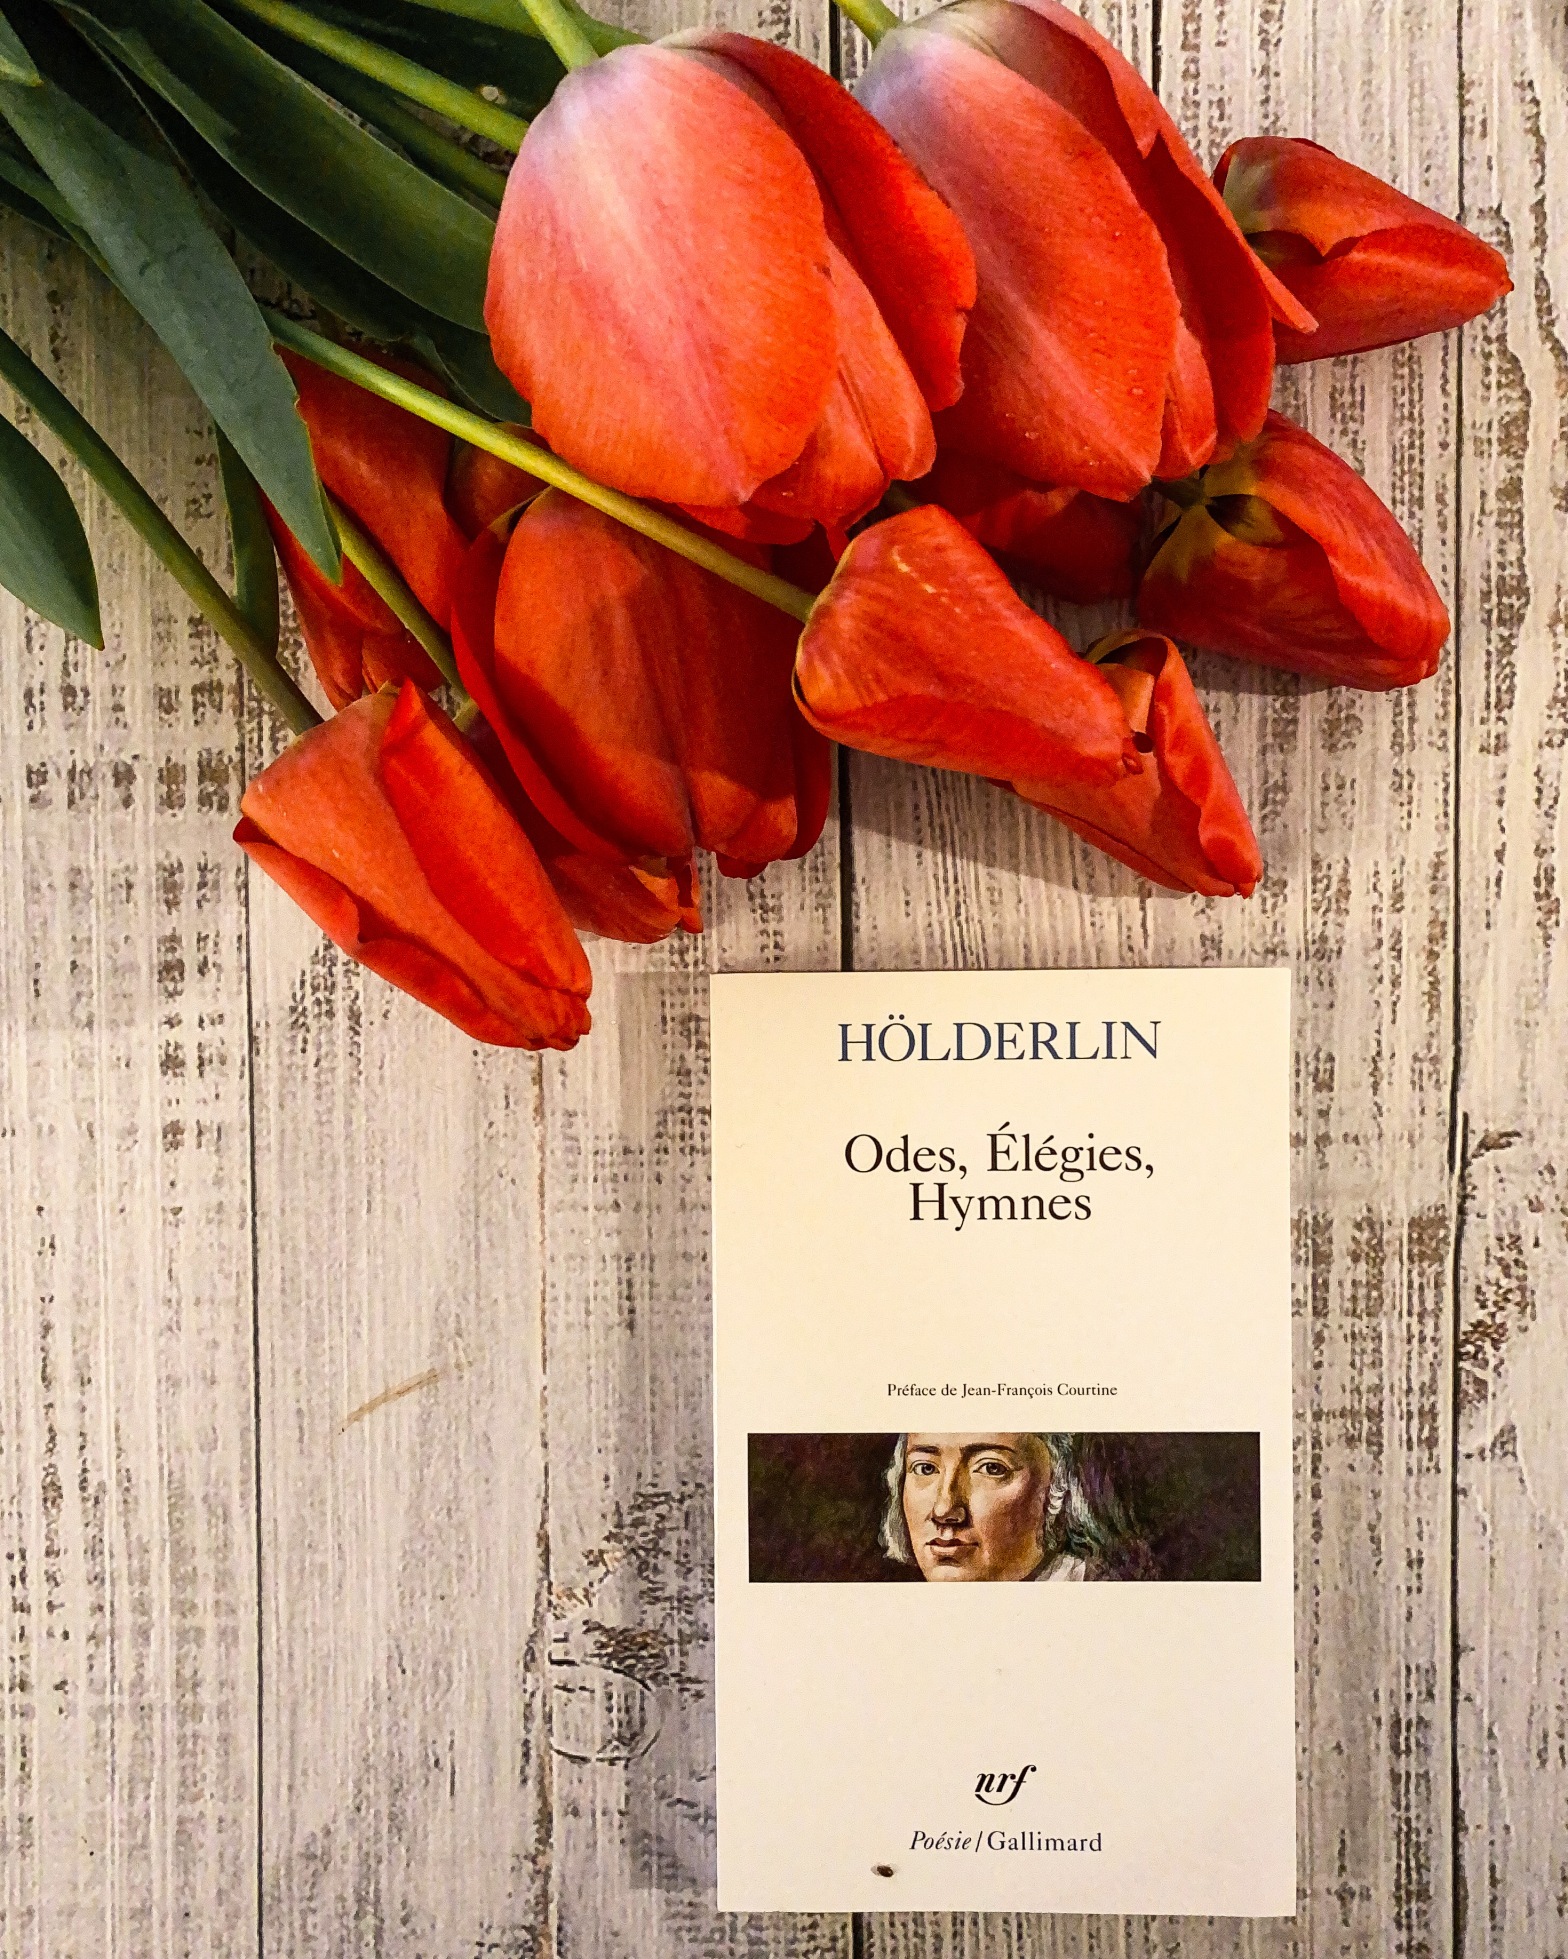 Odes, Elégies, Hymnes de Friedrich Hölderlin : habiter poétiquement le monde